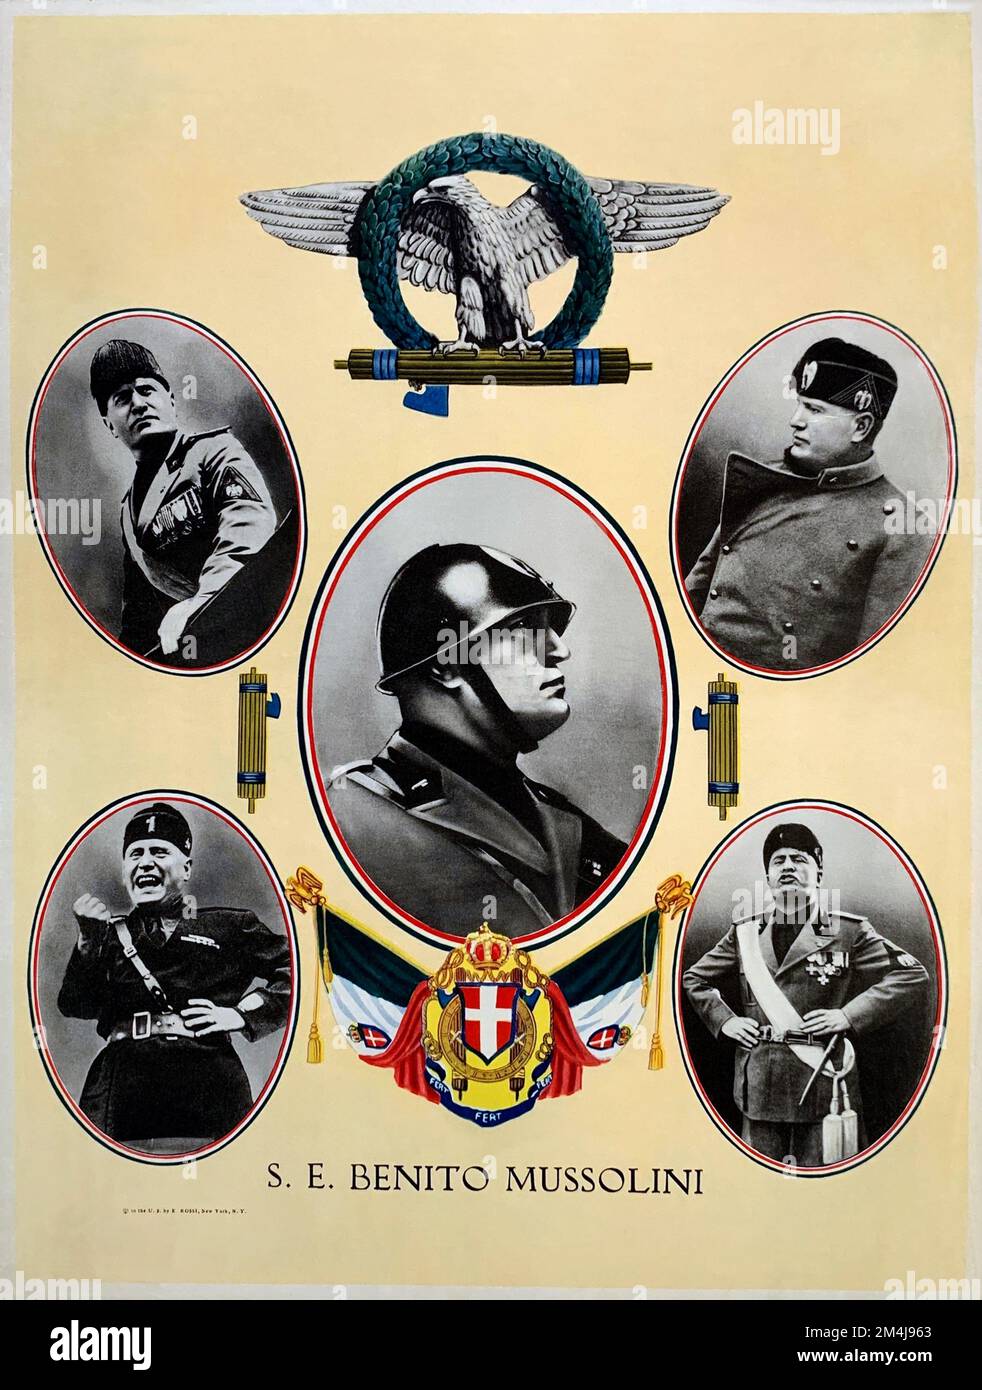 1936 , USA : il fascista italiano Duce BENITO MUSSOLINI raffigurato in UN POSTER fascista di Propaganda , pubblicato negli STATI UNITI per gli immigrati italiani . Stampato da E. Rossi , New York , NY . - STORIA - FOTO STORICHE - RITRATTO - RITRATTO - POLITICA - POLITICO - ITALIA - POLITICA - RITRATTO - ITALIA - FASCISMO - FASCISMO - FASCISTA - ITALIA - ANNI TRENTA - '30 - 30 - MANIFESTO DI PROPAGANDA - PROFILO - EMIGRANTI ITALIANI NEGATIVI STATI UNITI D'AMERICA - EMIGRANTI - EMIGRAZIONE ITALIANA - IMMIGRATI - EMIGRANTI - FASCIO LITTORIO --- ARCHIVIO GBB Foto Stock